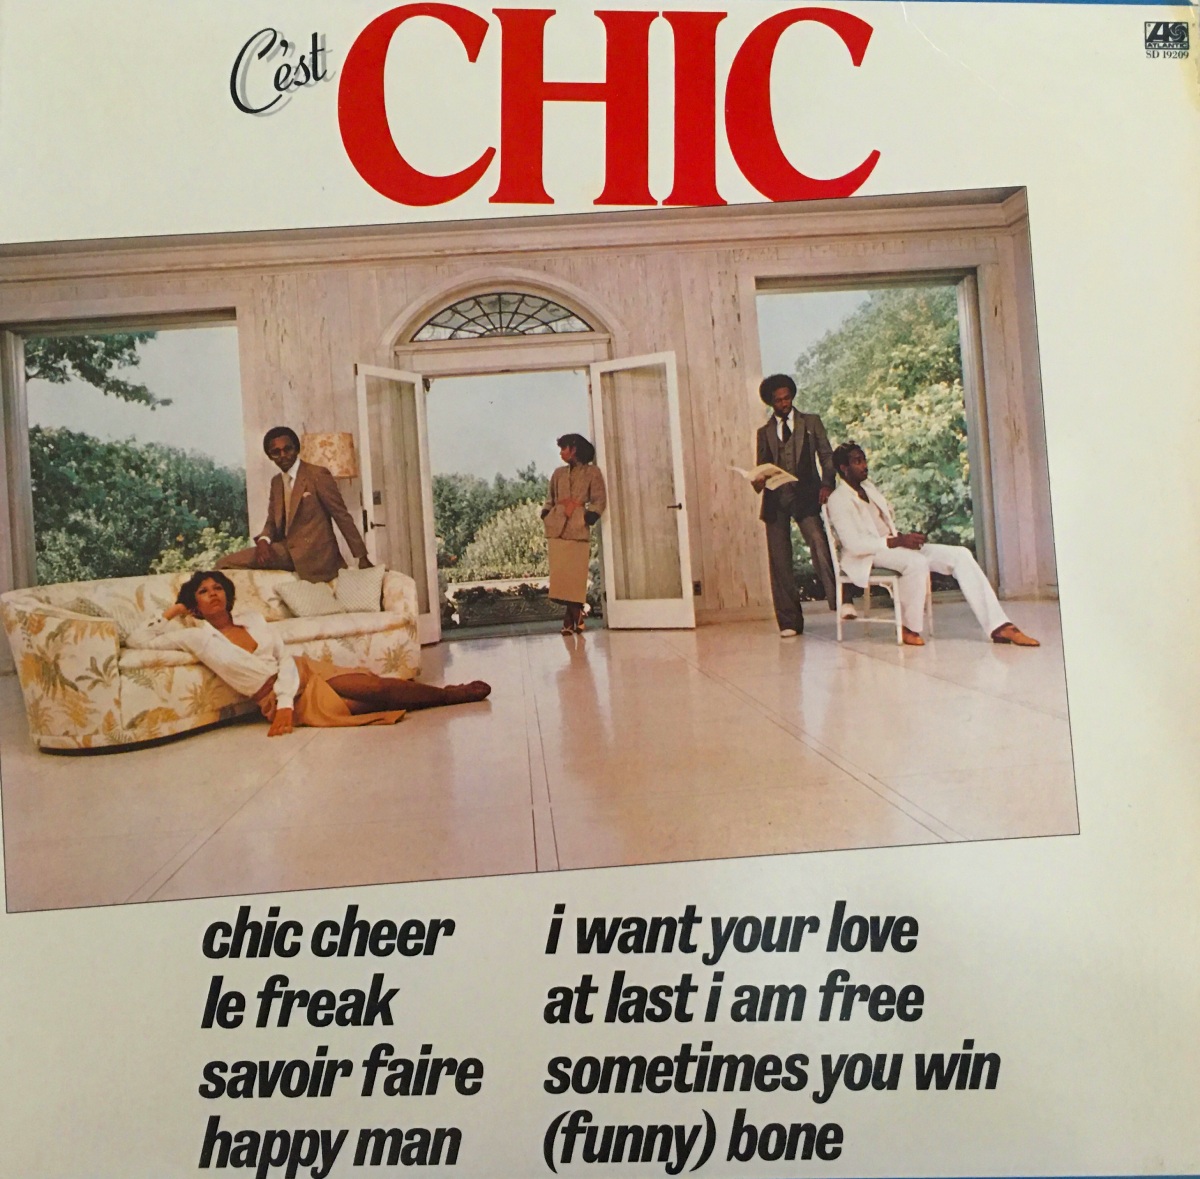 Couverture de "C'est Chic" (1978) par Chic